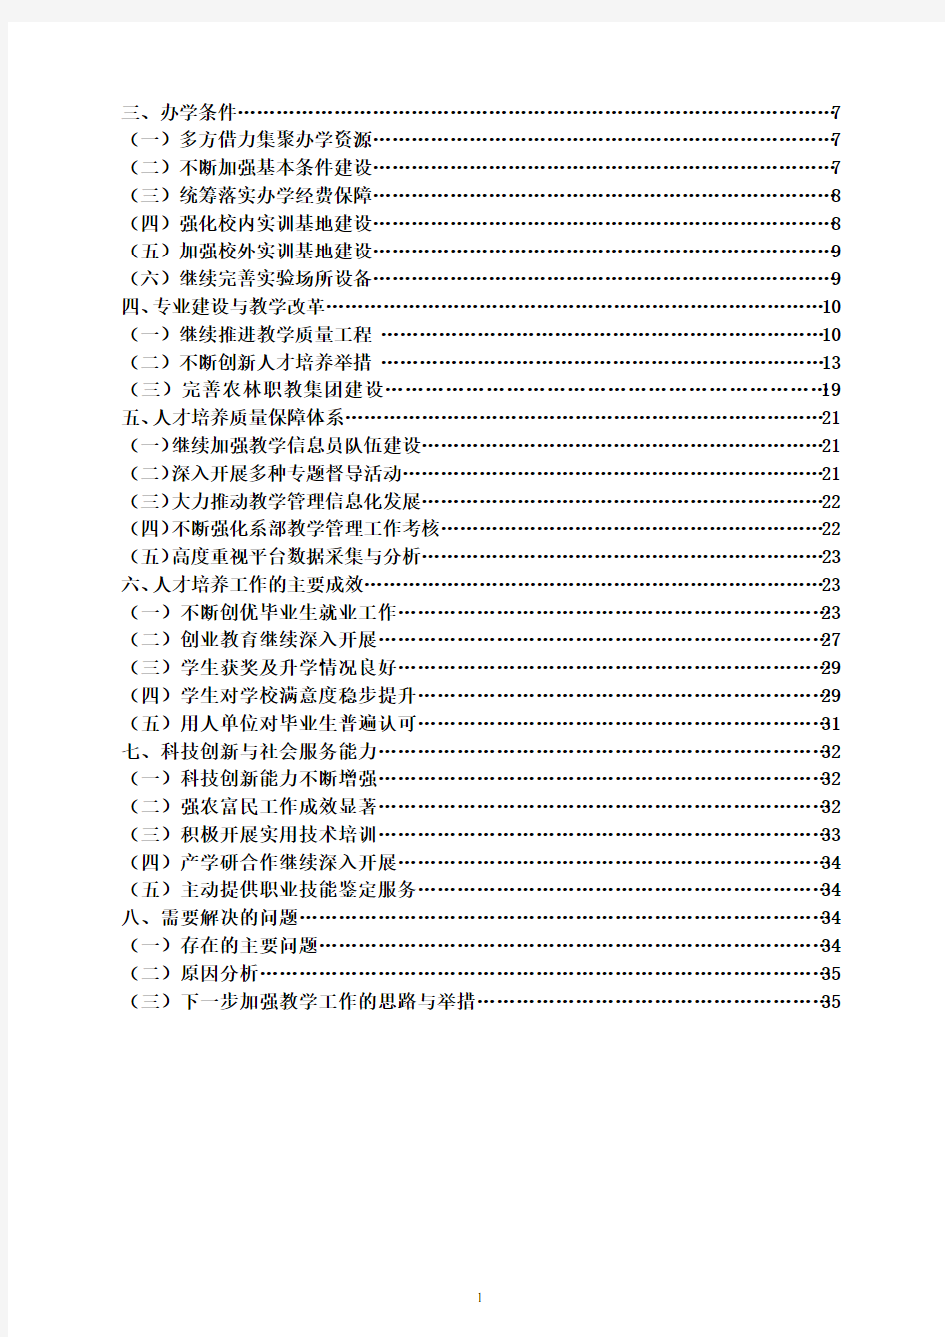 江苏农林职业技术学院人才培养2012年度报告